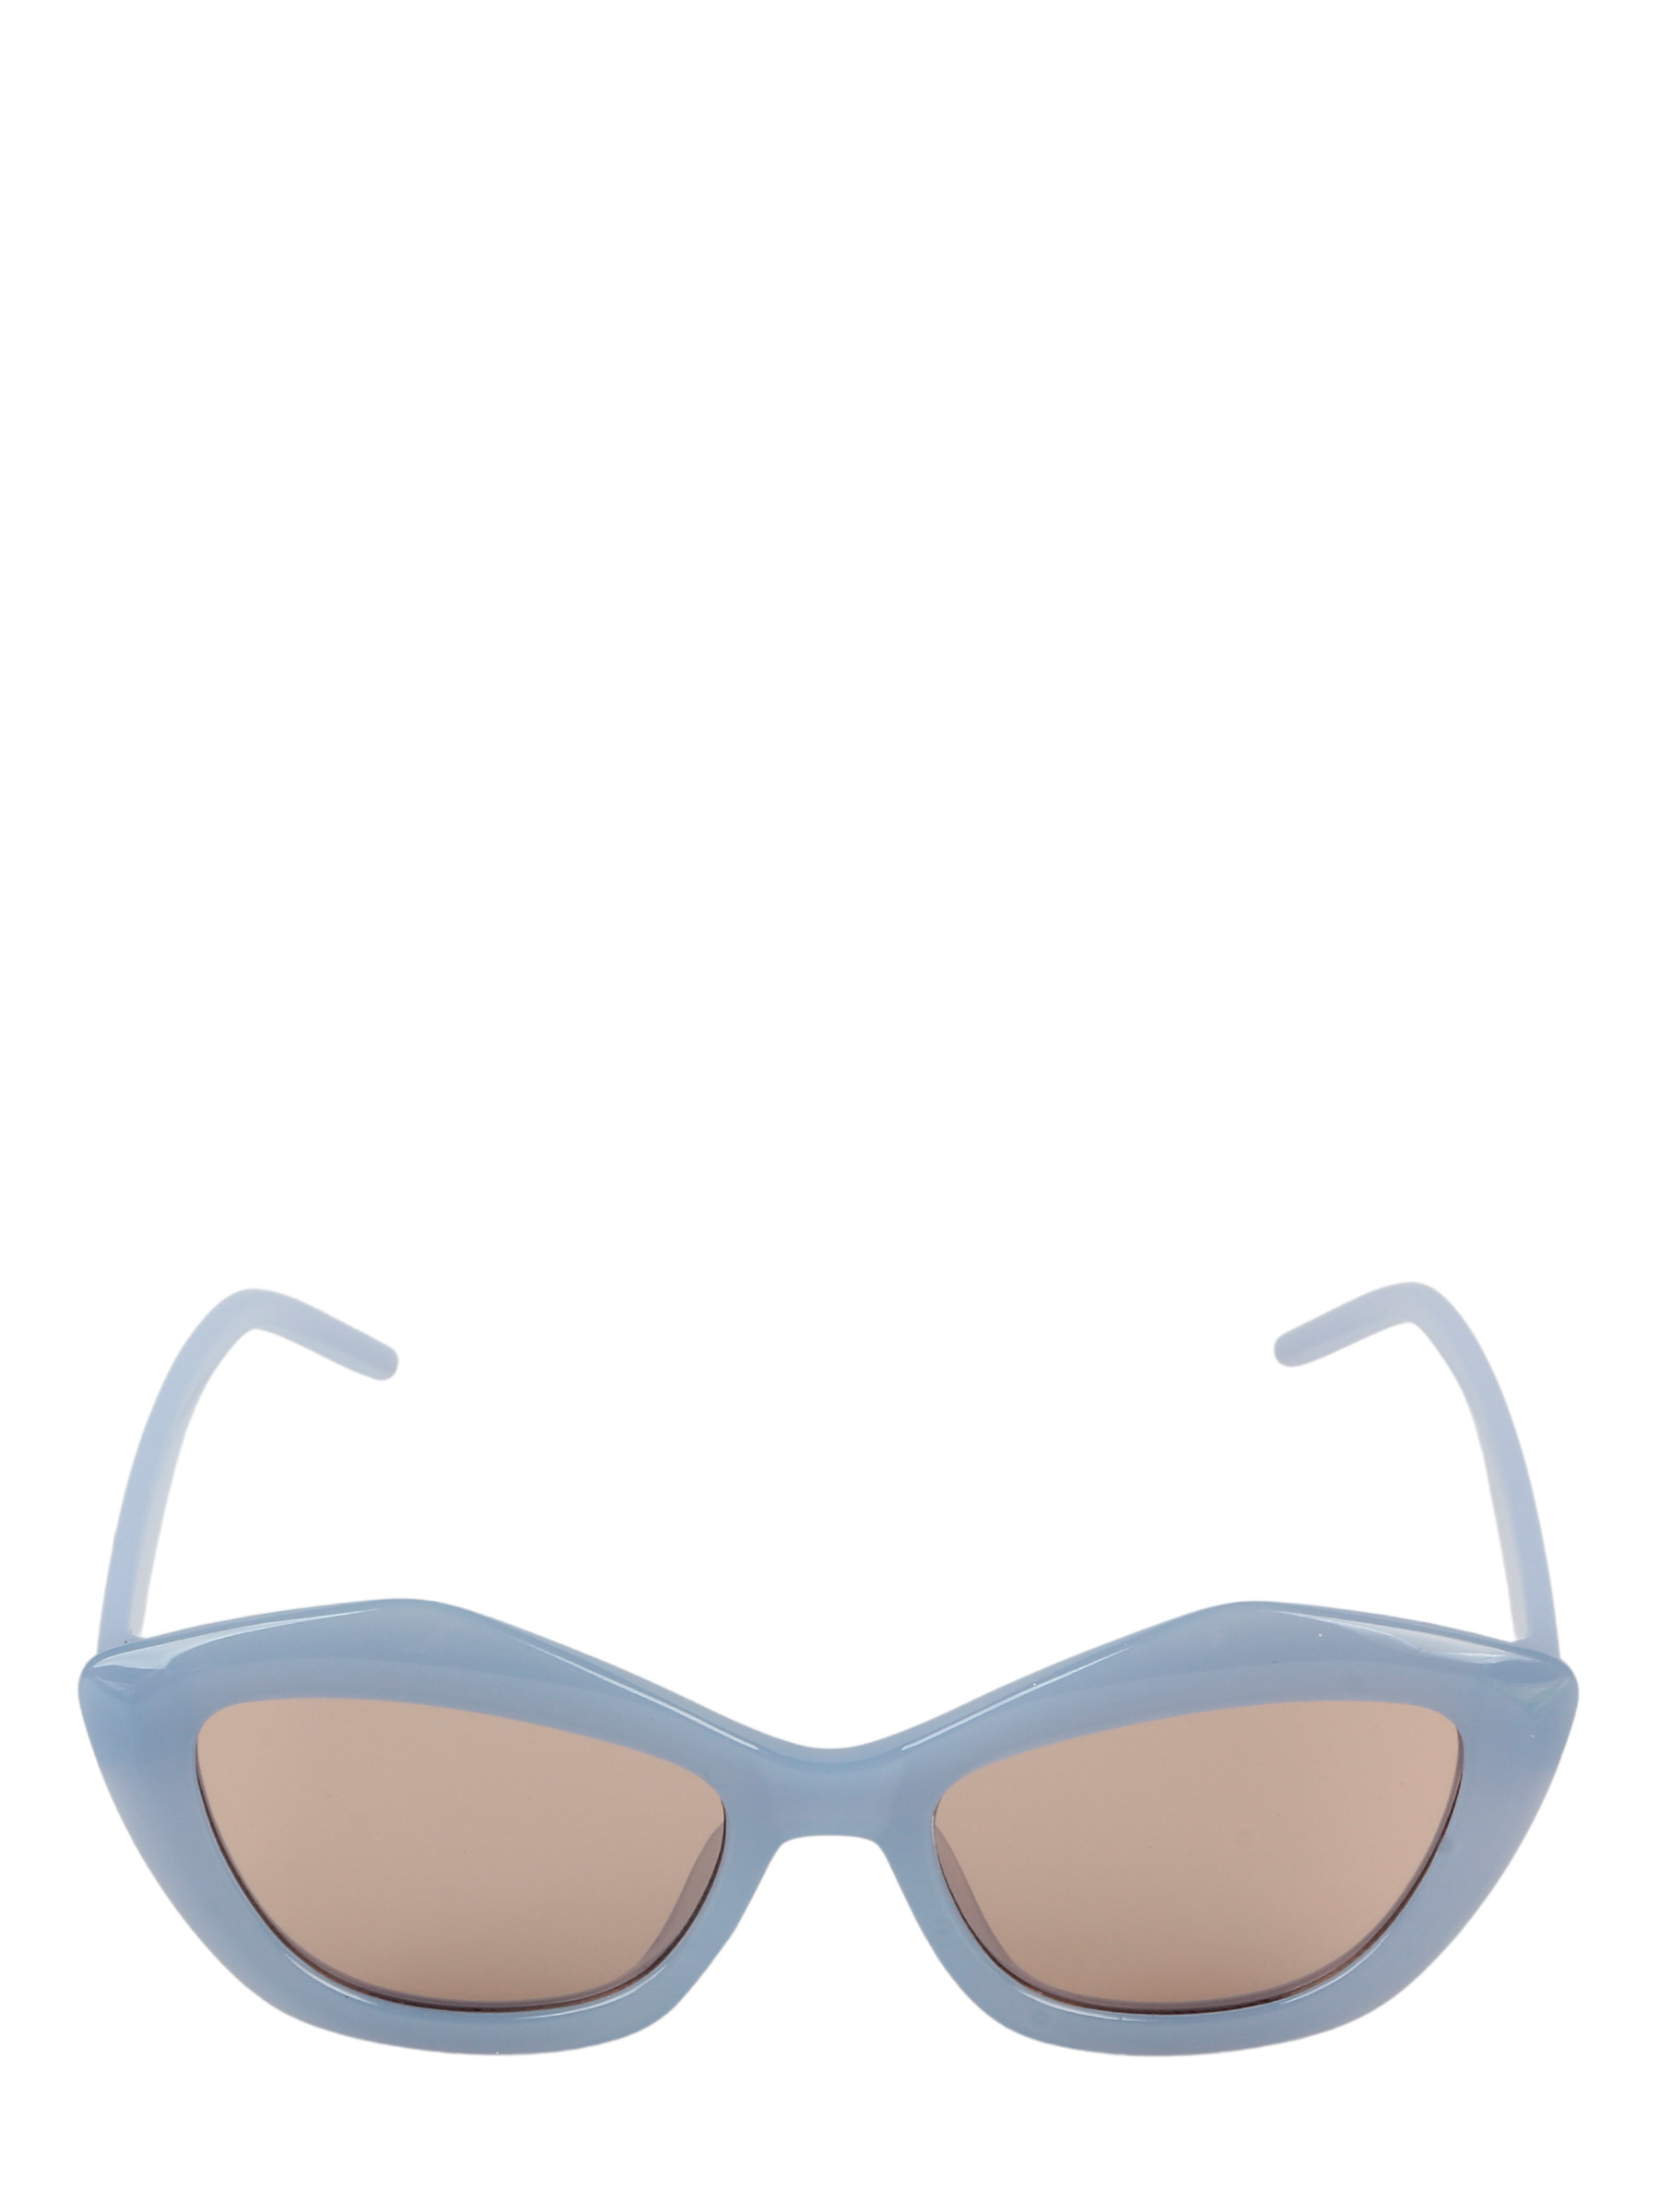 фото Солнцезащитные очки женские pretty mania mdd0040 голубой